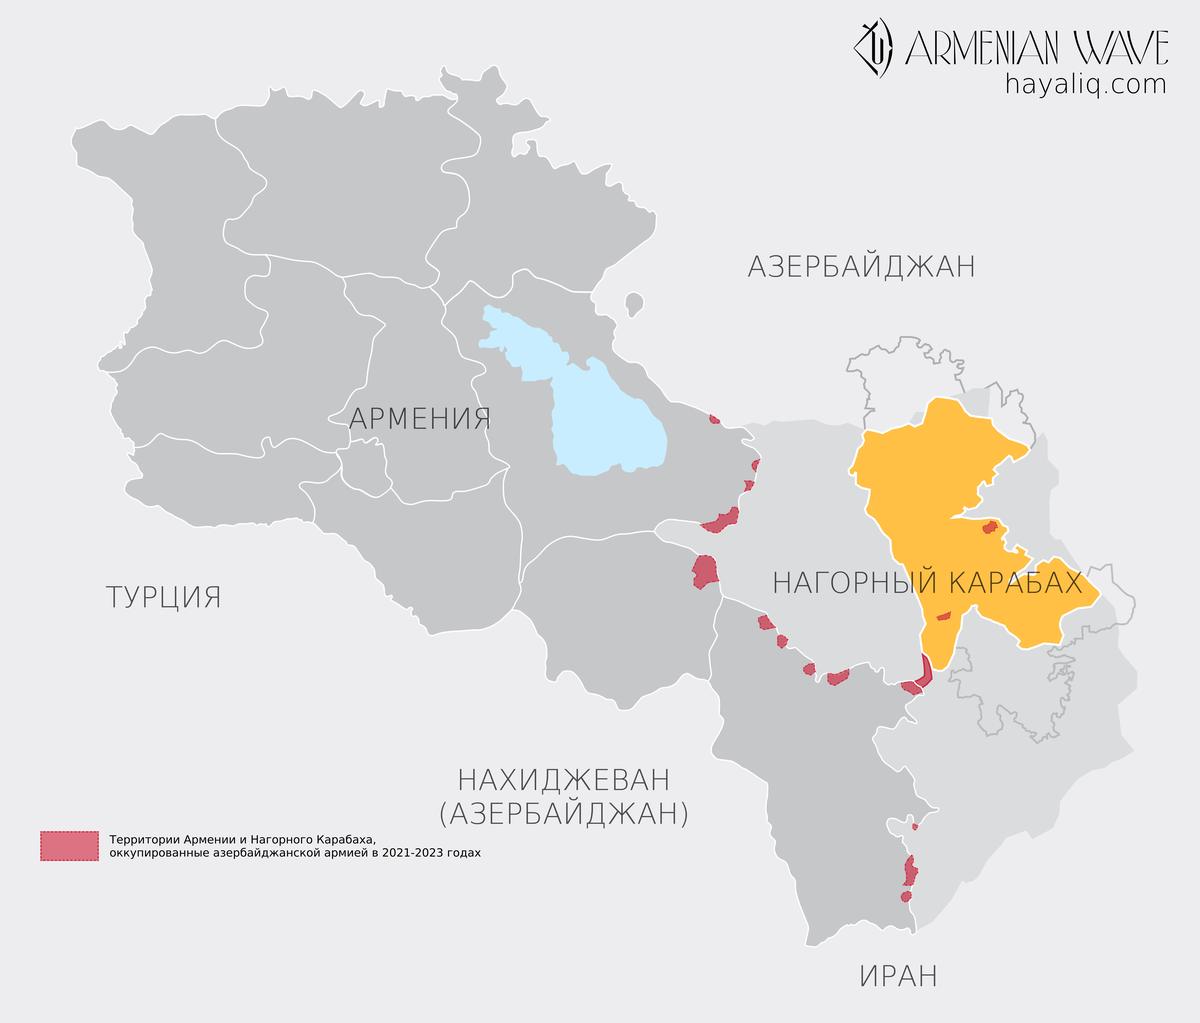 Политика блокады Азербайджана на территории Республики Армения по версии армянской стороны. Фото:  Hayaliq